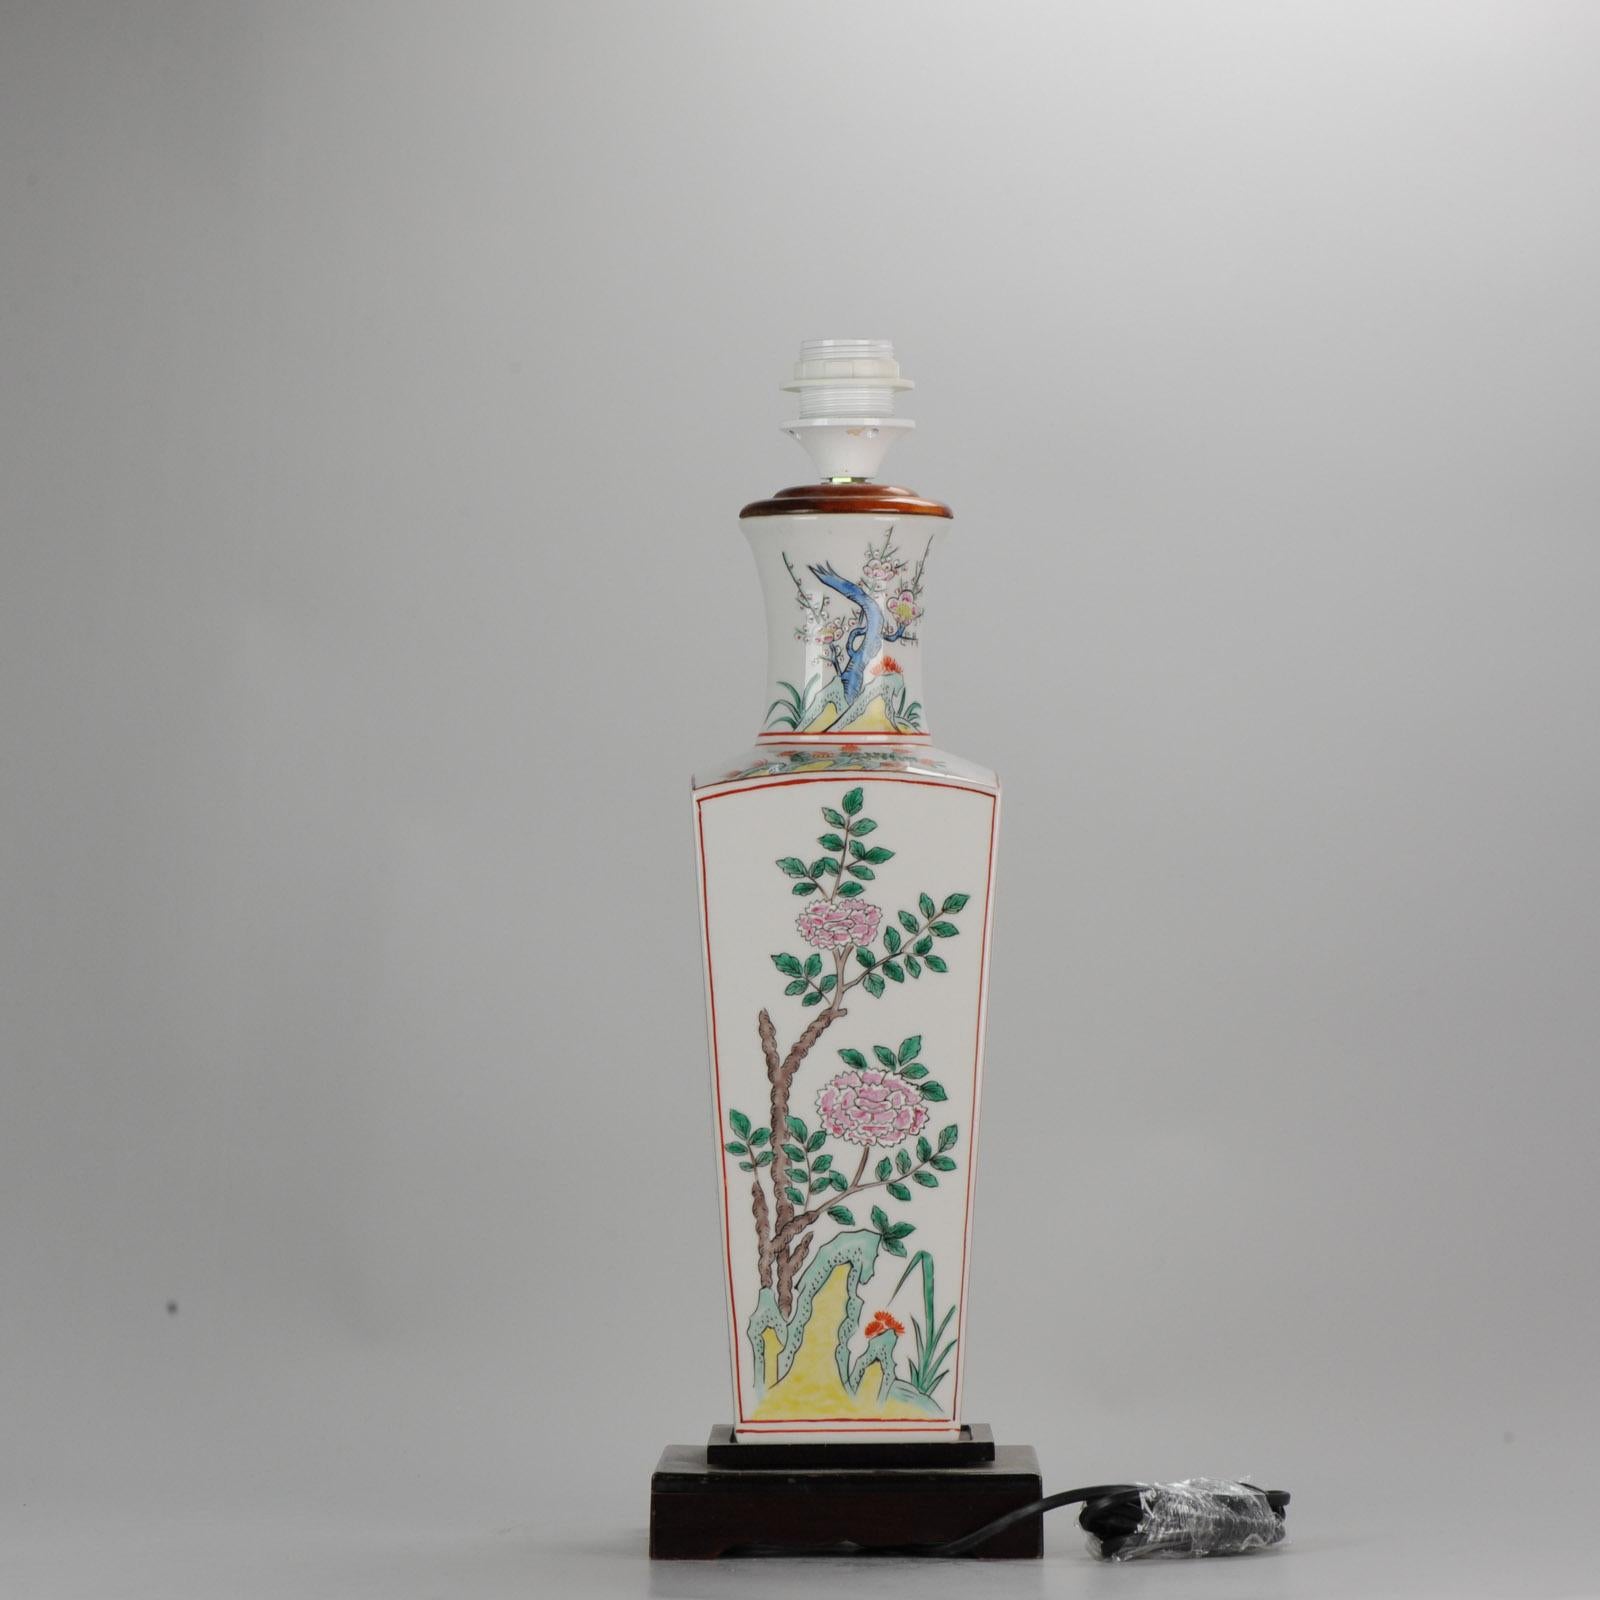 Un intéressant vase de Nankin avec une scène de guerriers. Transformé en lampe.

 Un intéressant vase craquelé de Nankin. République Minguo ou Qing tardif

 
Condition
Etat général ; Cou restauré, plus aucun dommage. Taille : 550 mm de haut